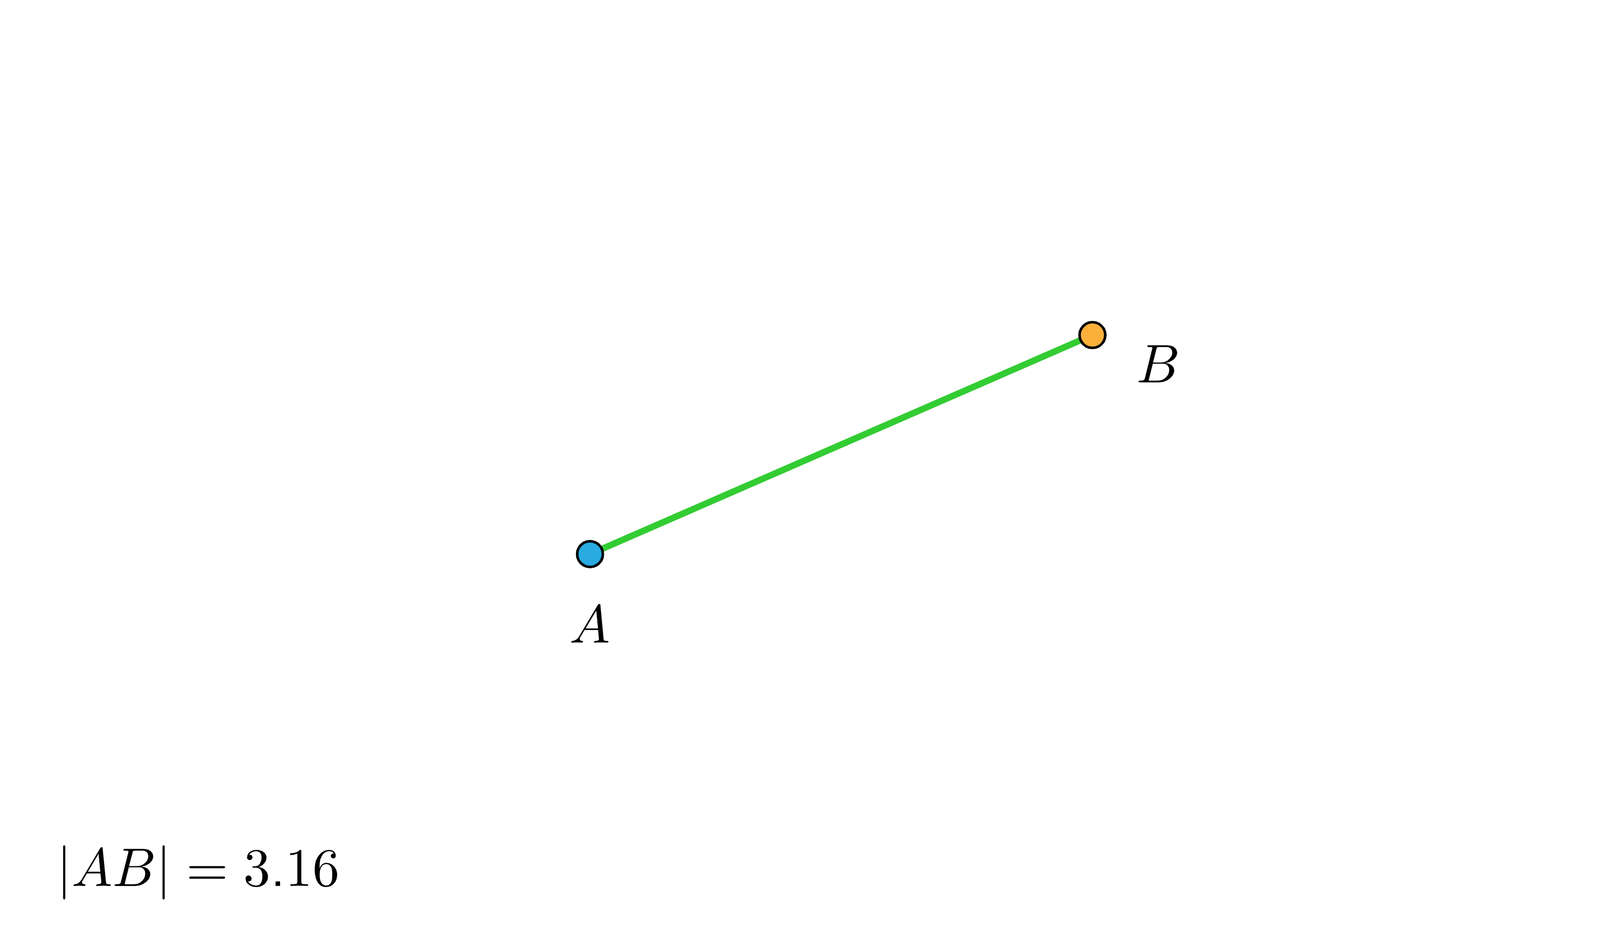 Ilustracja interaktywna przedstawia dwa połączone ze sobą punkty A oraz B. Punkt A jest nieruchomy. Istnieje możliwość poruszania punktem B. Poniżej rysunku wyświetlana jest długość otrzymanego odcinka. Przykładowo ustawiając punkt B w prawym górnym rogu grafiki otrzymujemy AB=6,6. Ustawiając położenie punktu B bardzo blisko punktu A możemy otrzymać AB=0,06.